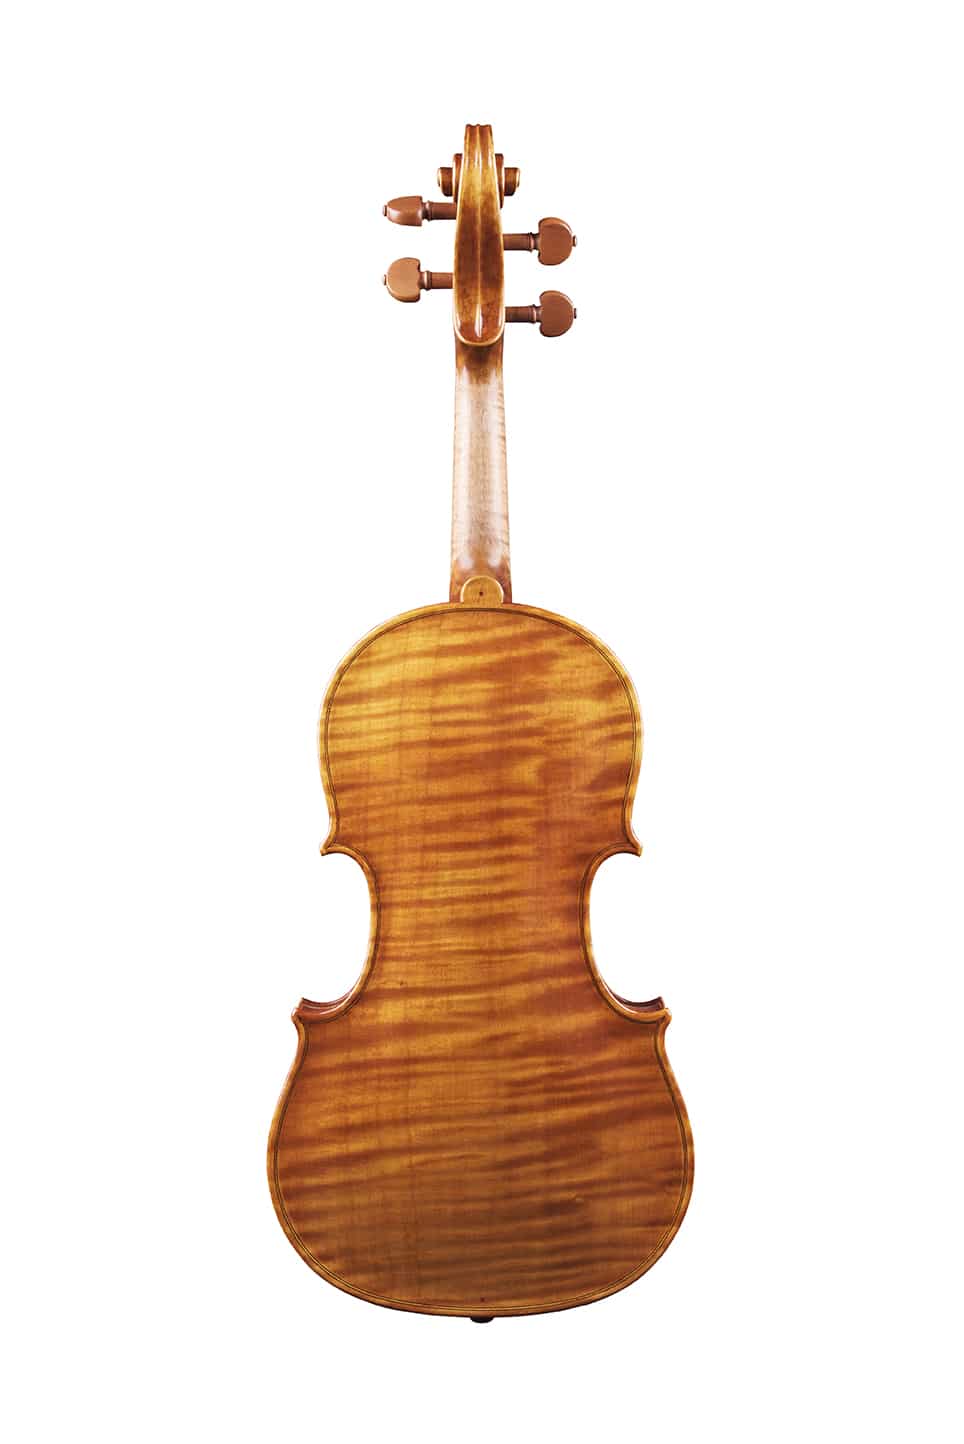 Violon baroque - Guillaume KESSLER, luthier du quatuor à Strasbourg